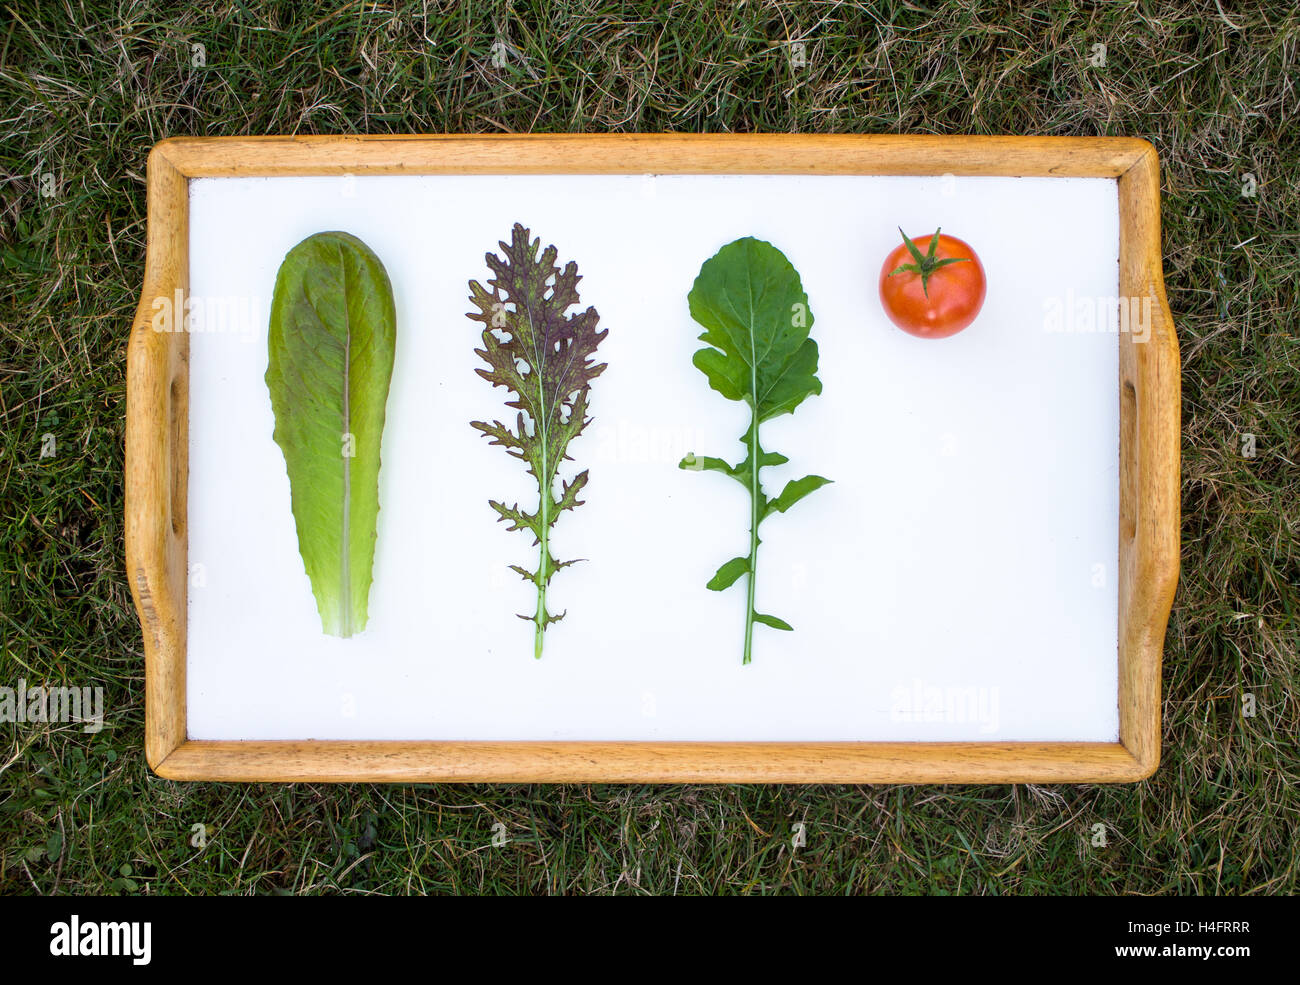 Gemüse auf einem Whiteboard Klassenzimmer inspiriert, Bauernhof inspiriert, Senf, Rucola, Tomaten Stockfoto